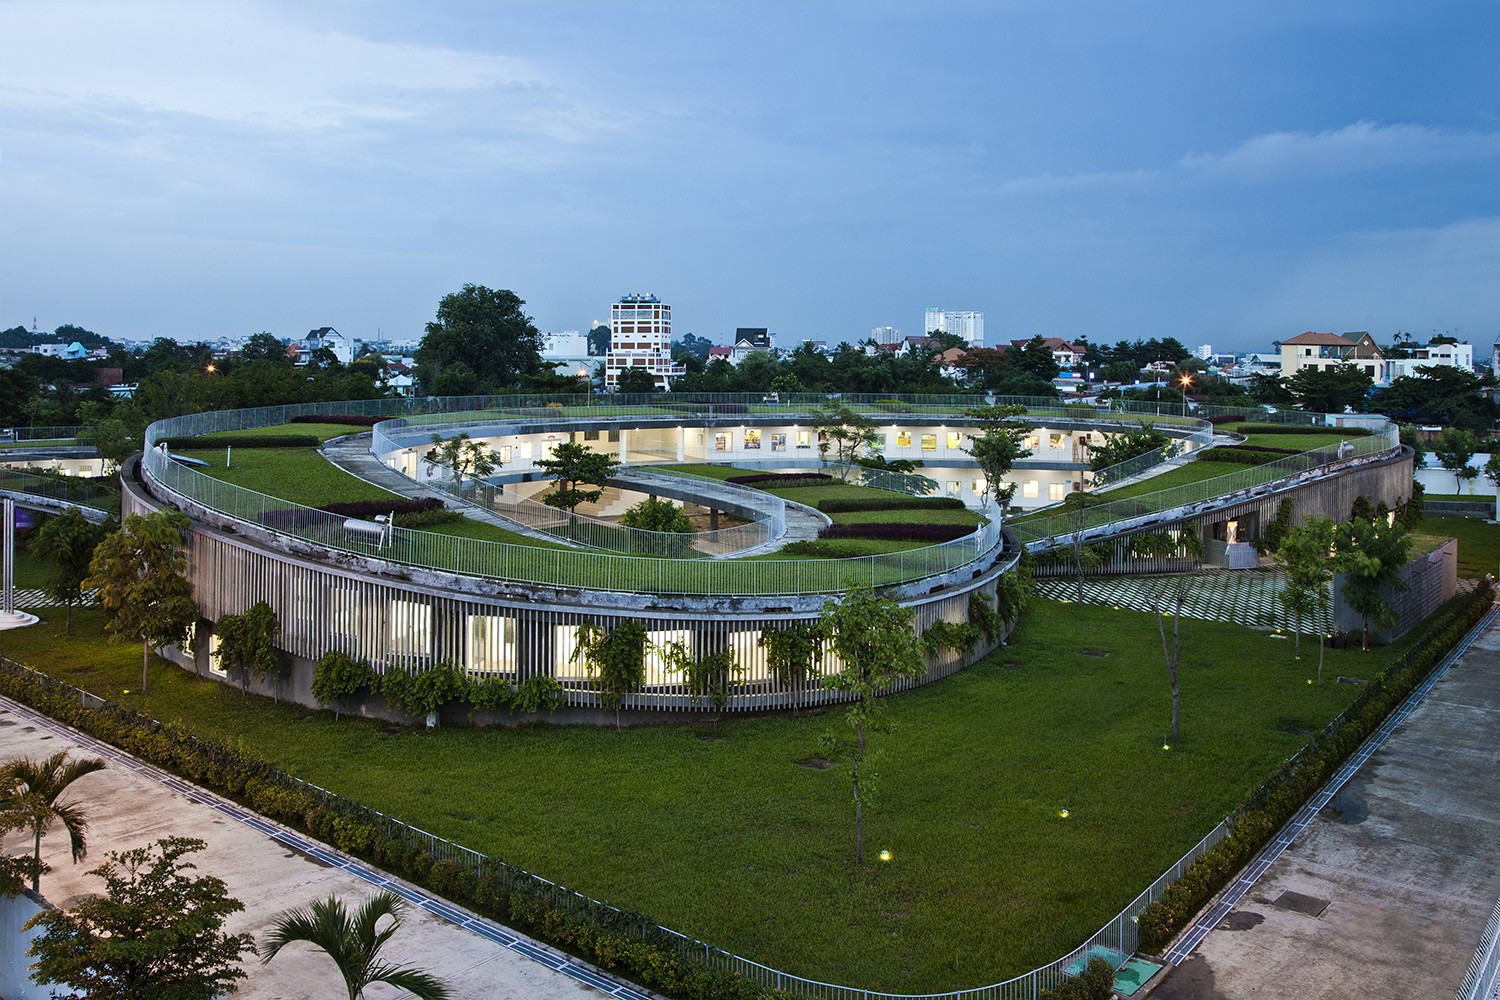 Hình ảnh ngôi trường mầm non ở Đồng Nai được xếp hạng đẹp nhất thế giới